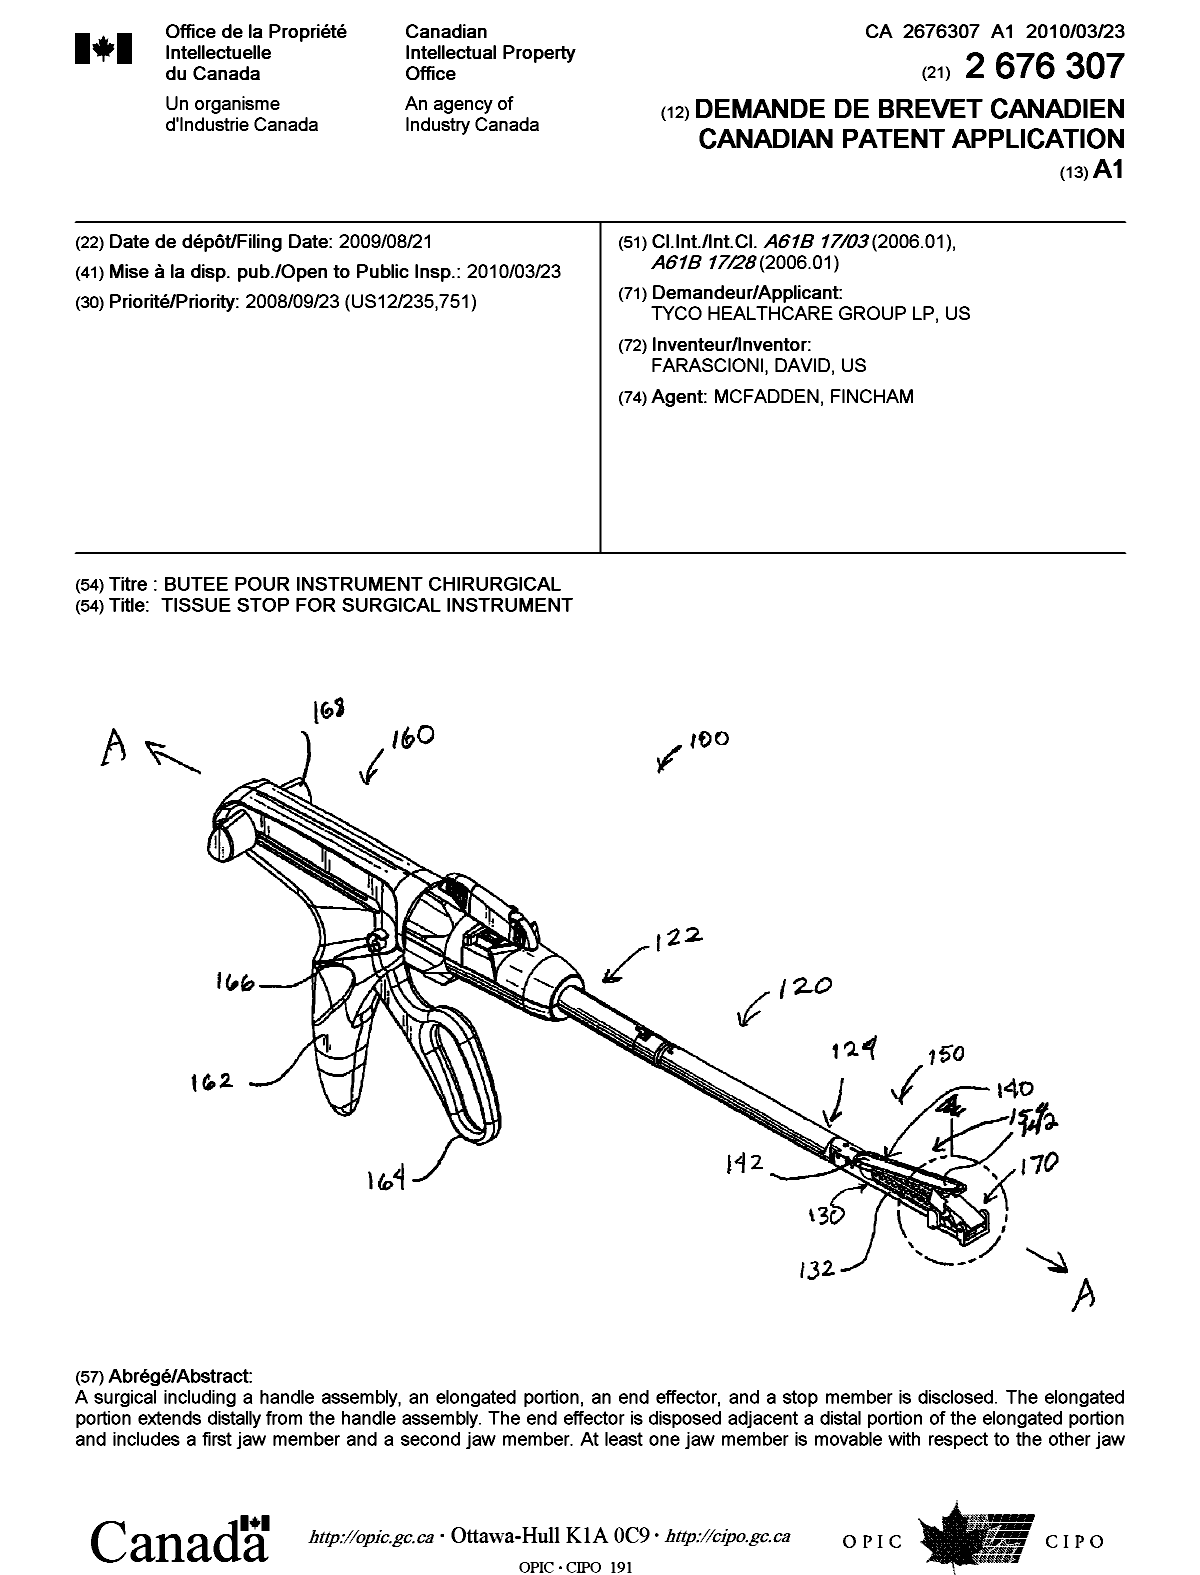 Document de brevet canadien 2676307. Page couverture 20100315. Image 1 de 2